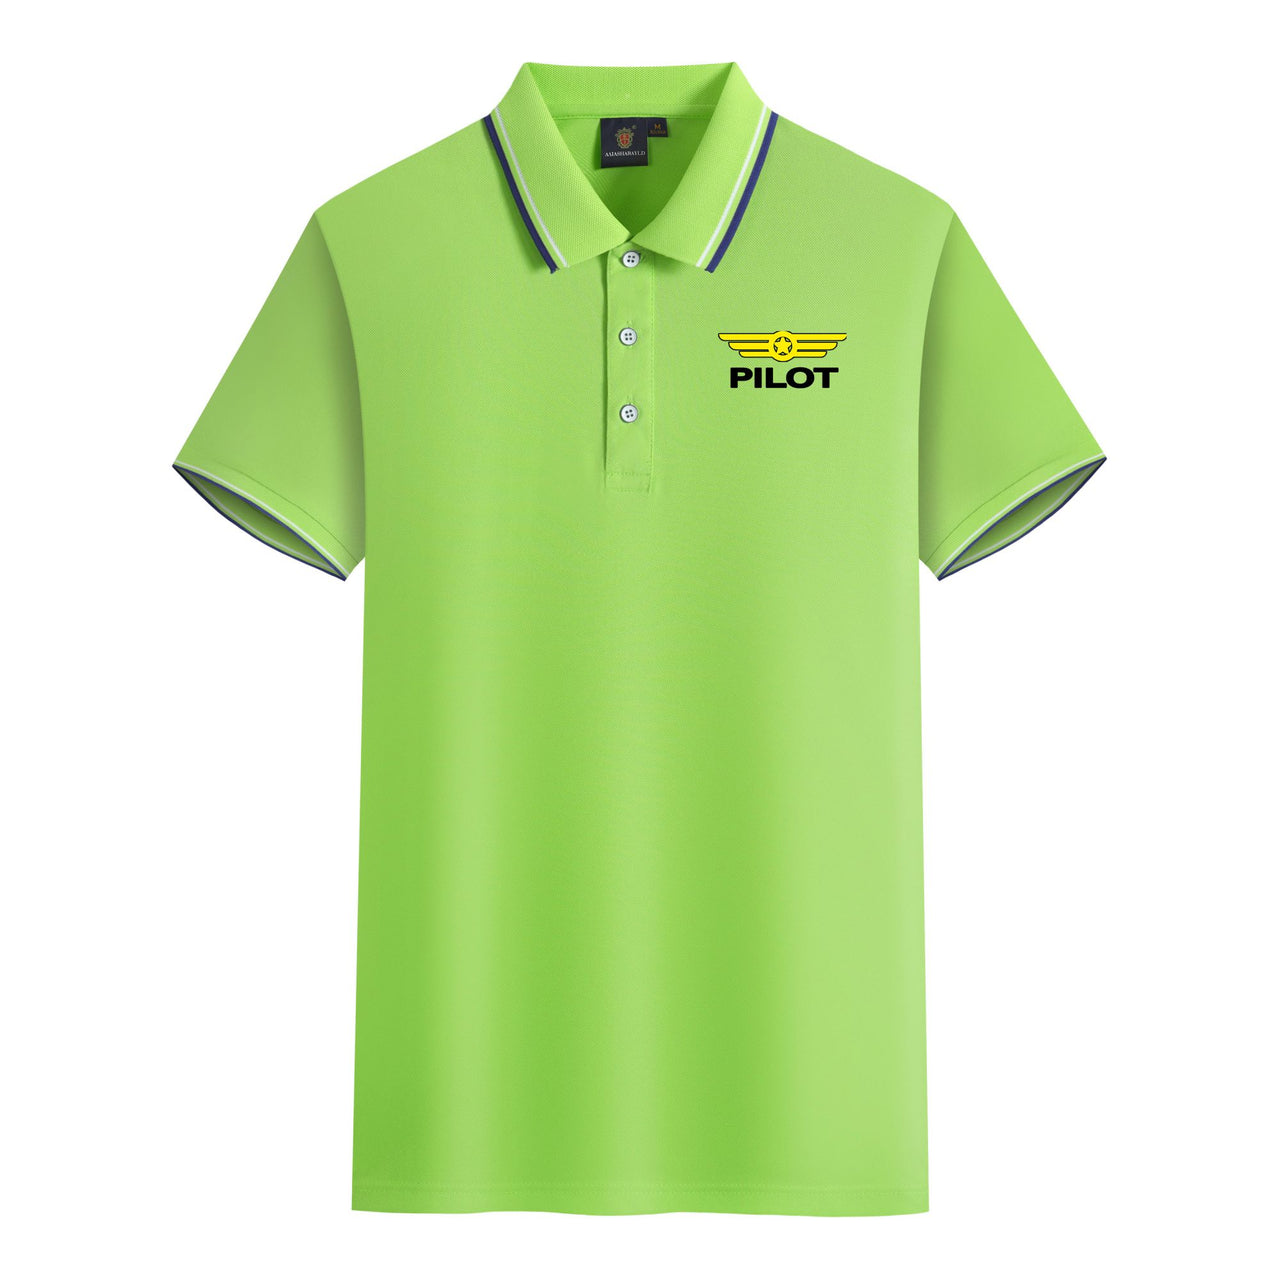 Pilot & Badge Designed Stylish Polo T-Shirts